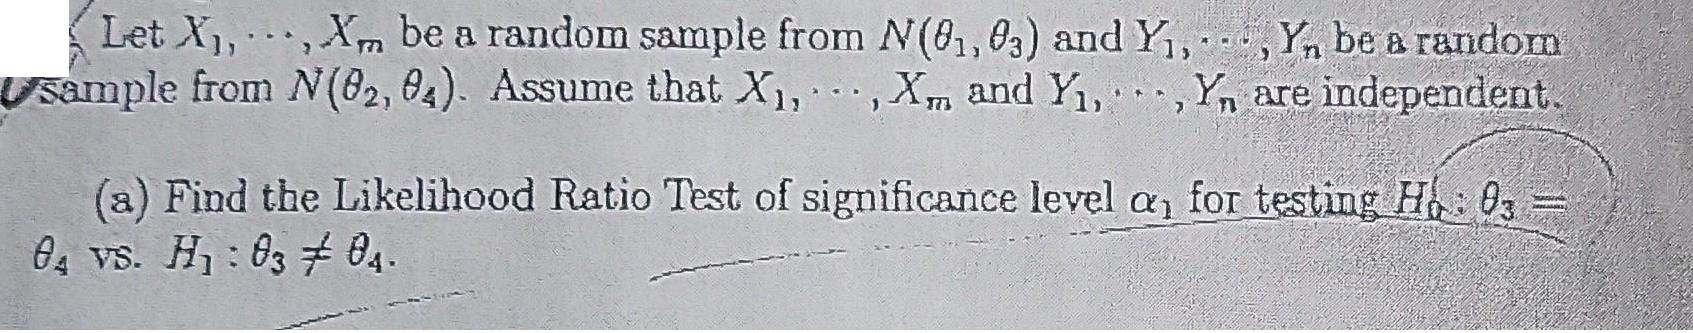 13 Let X, Xm be a random sample from N(01, 03) and Y, Y, be a random Usample from N(82, 04). Assume that X,,